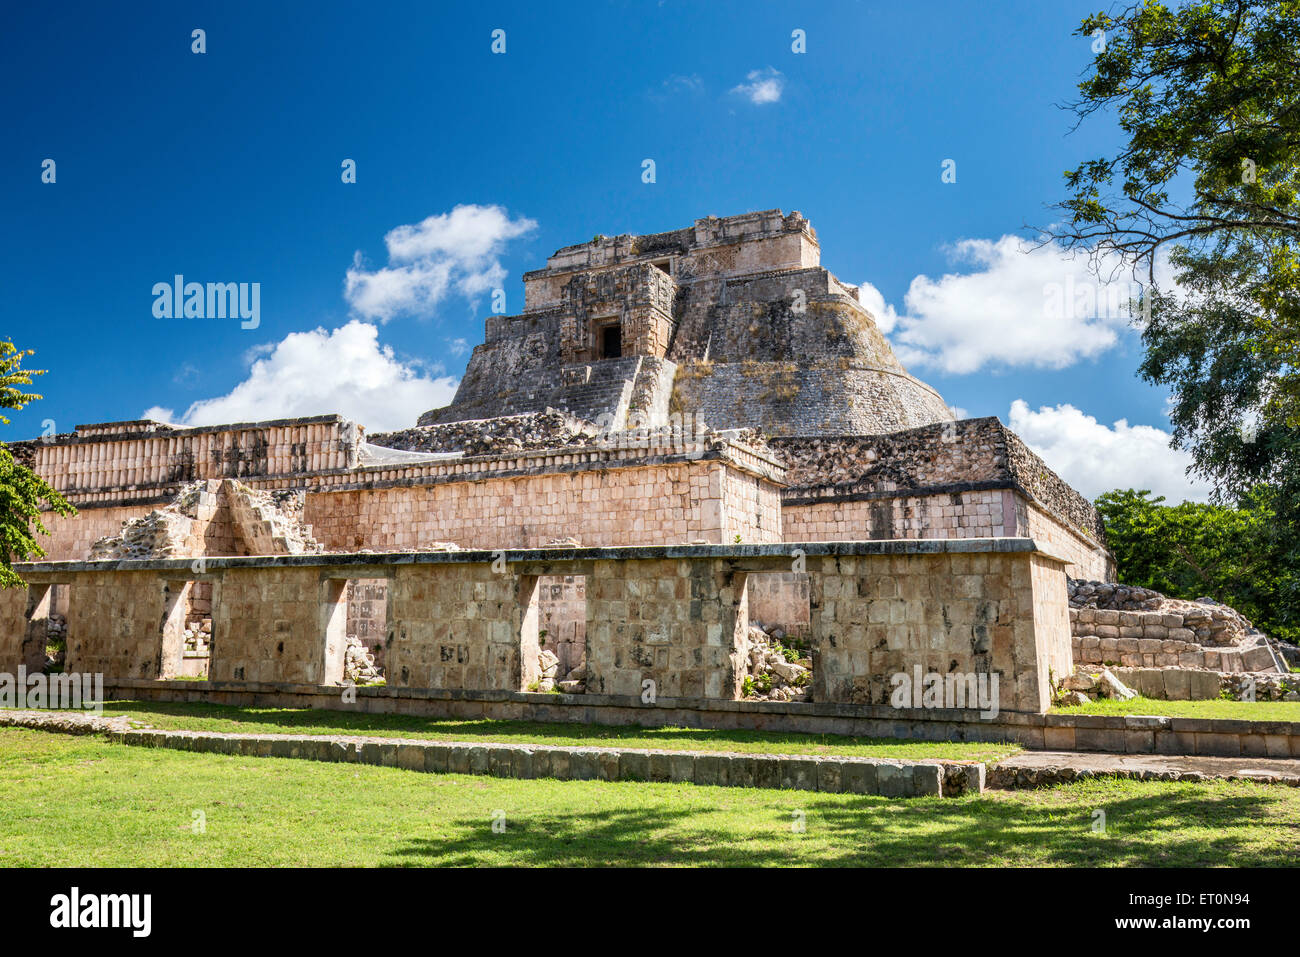 Piramide del Adivino (Magicians House), Maya ruins at Uxmal archaeological site, Yucatan Peninsula, Mexico Stock Photo